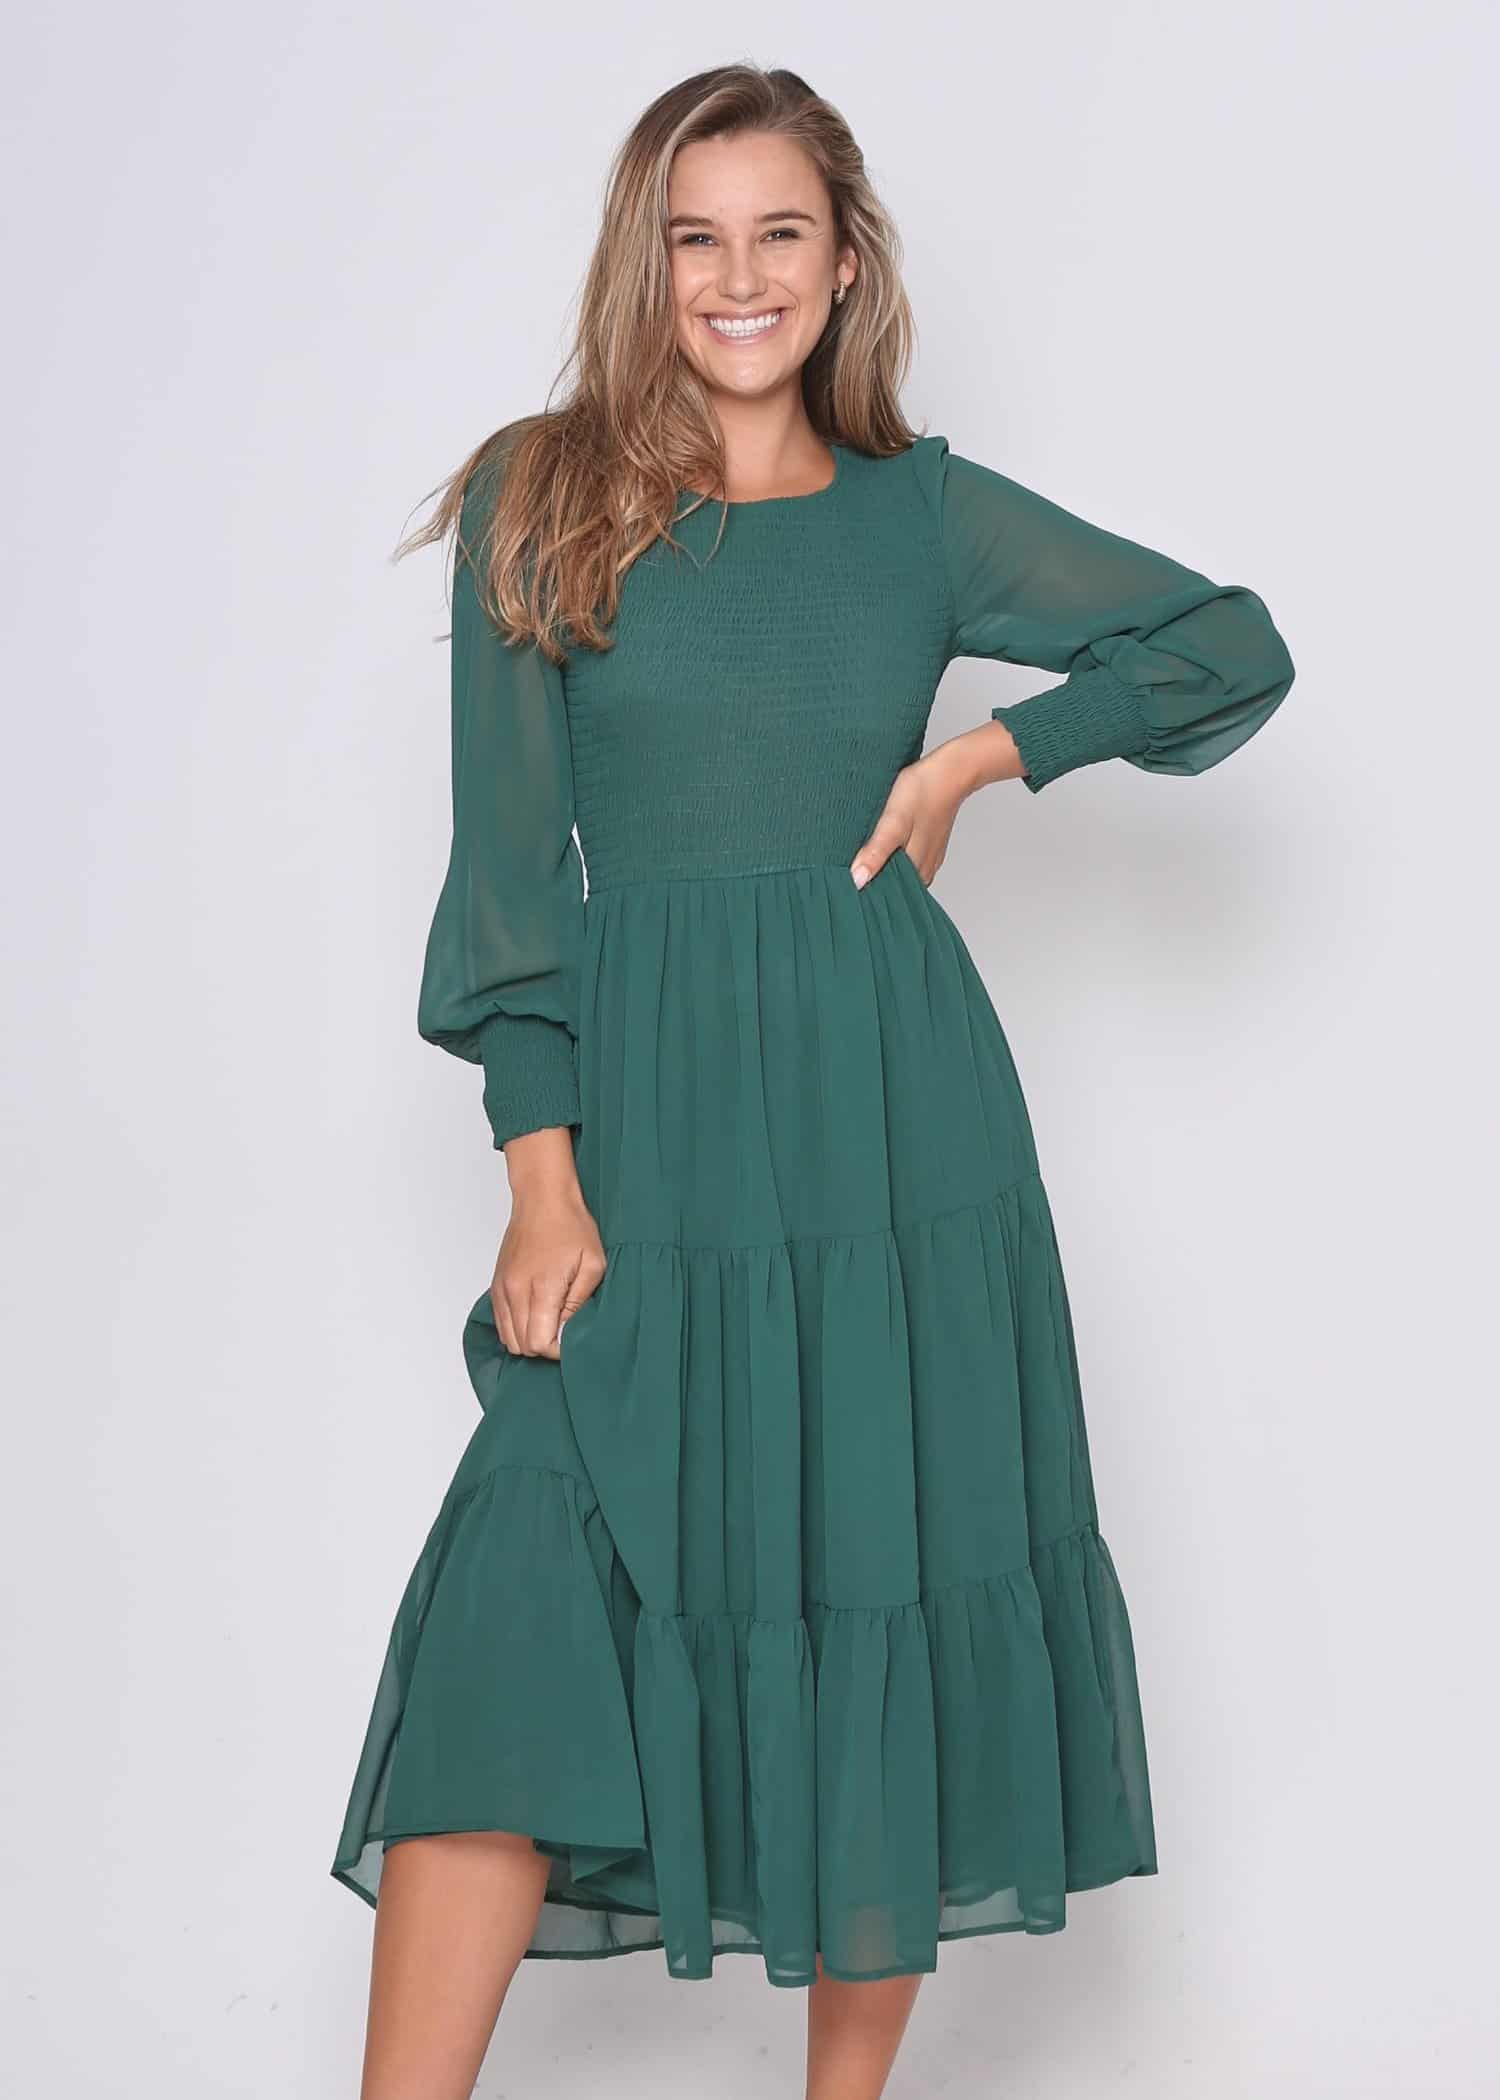 Phoenix Dress - Florence Store - Women's Boutique Fashion - Online ...